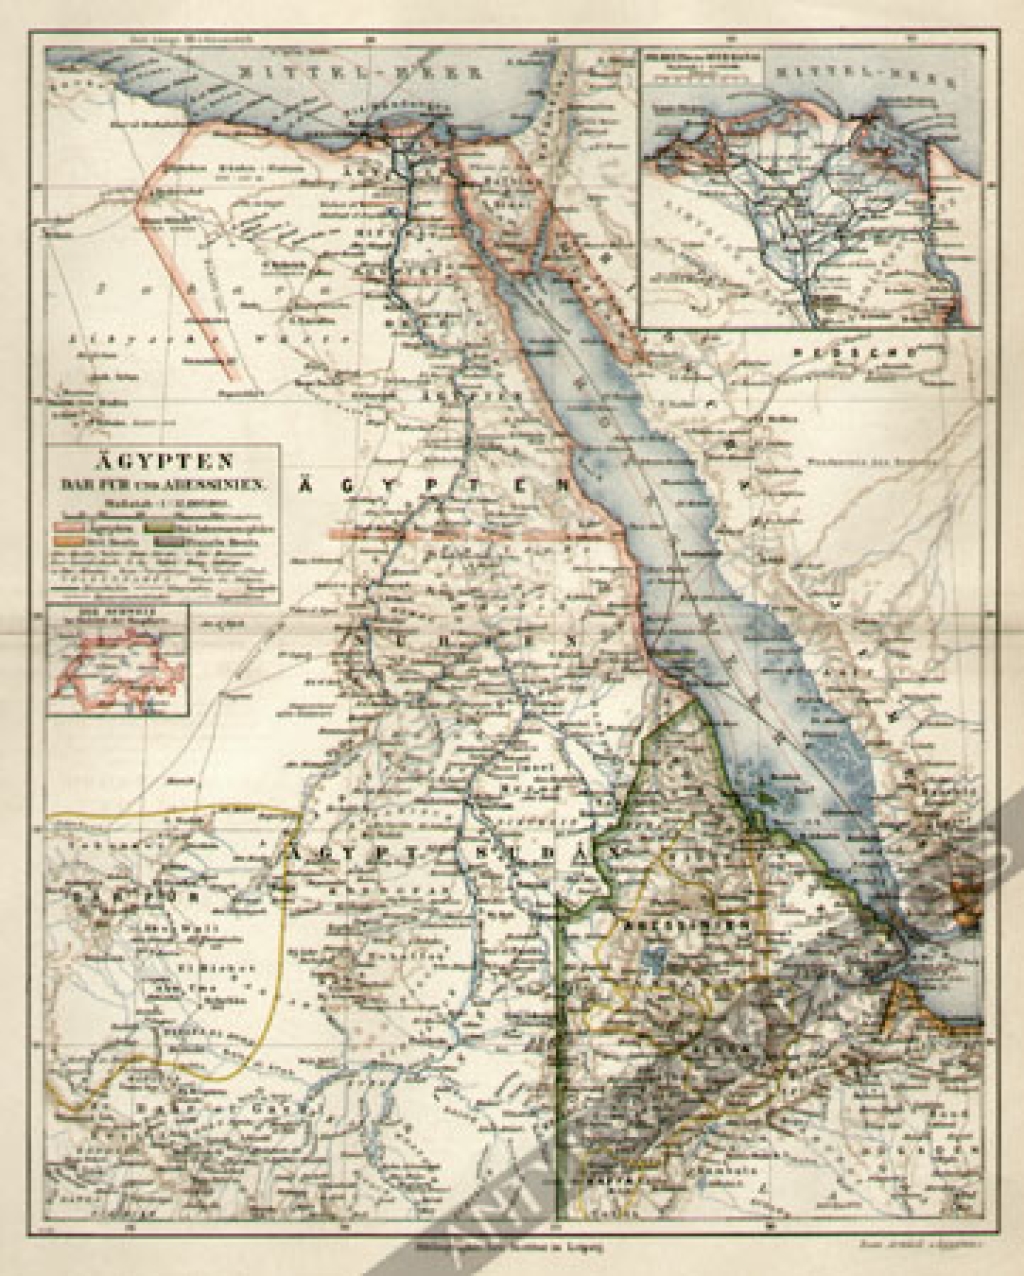 [mapa, ok. 1890] Agypten, Dar Fur und Abessinien